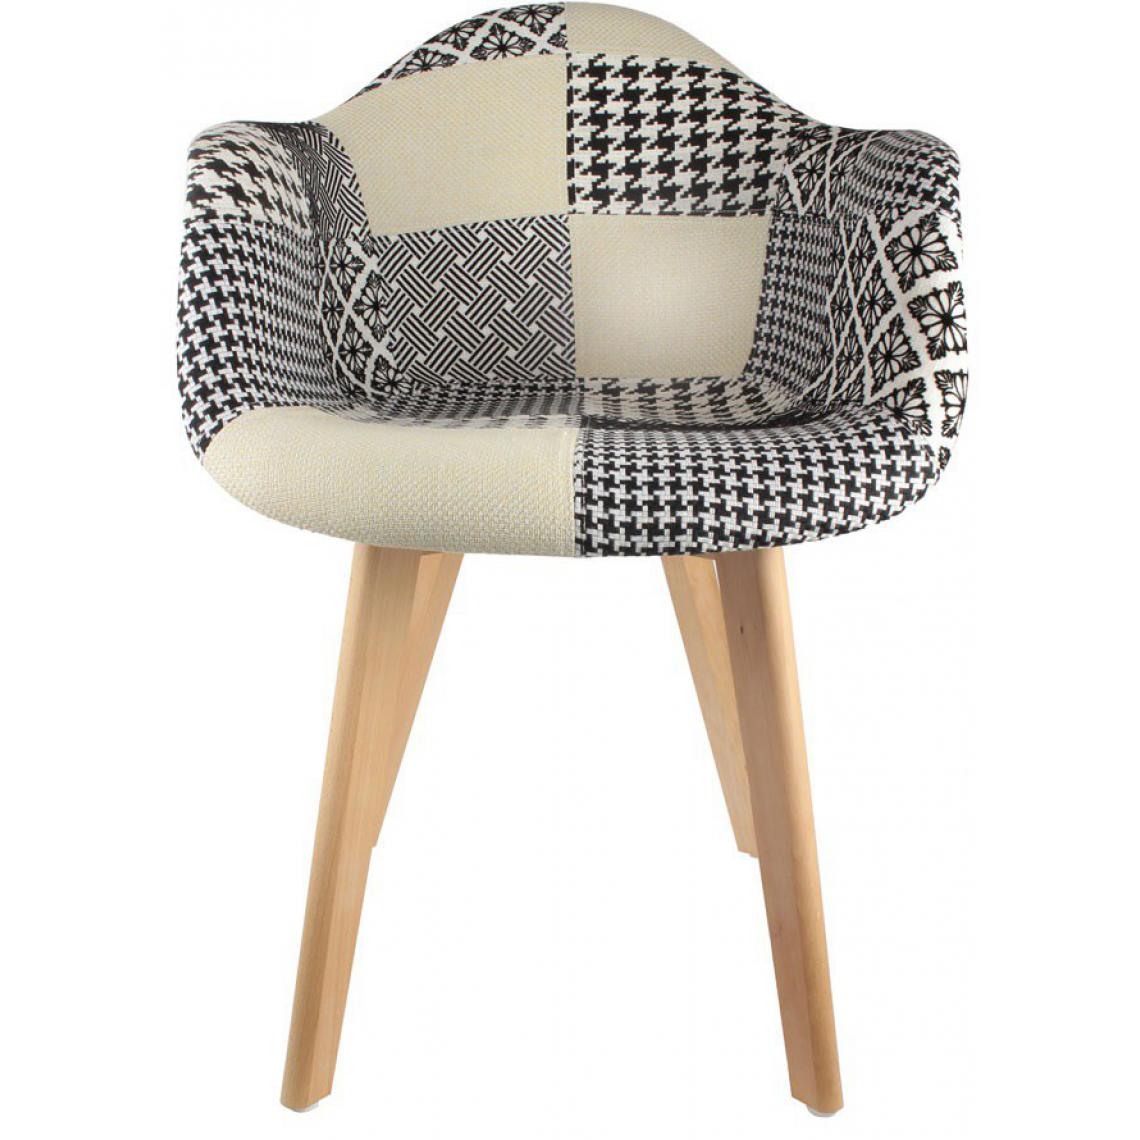 3S. x Home - Chaise scandinave avec accoudoir patchwork bicolore FJORD - Chaises